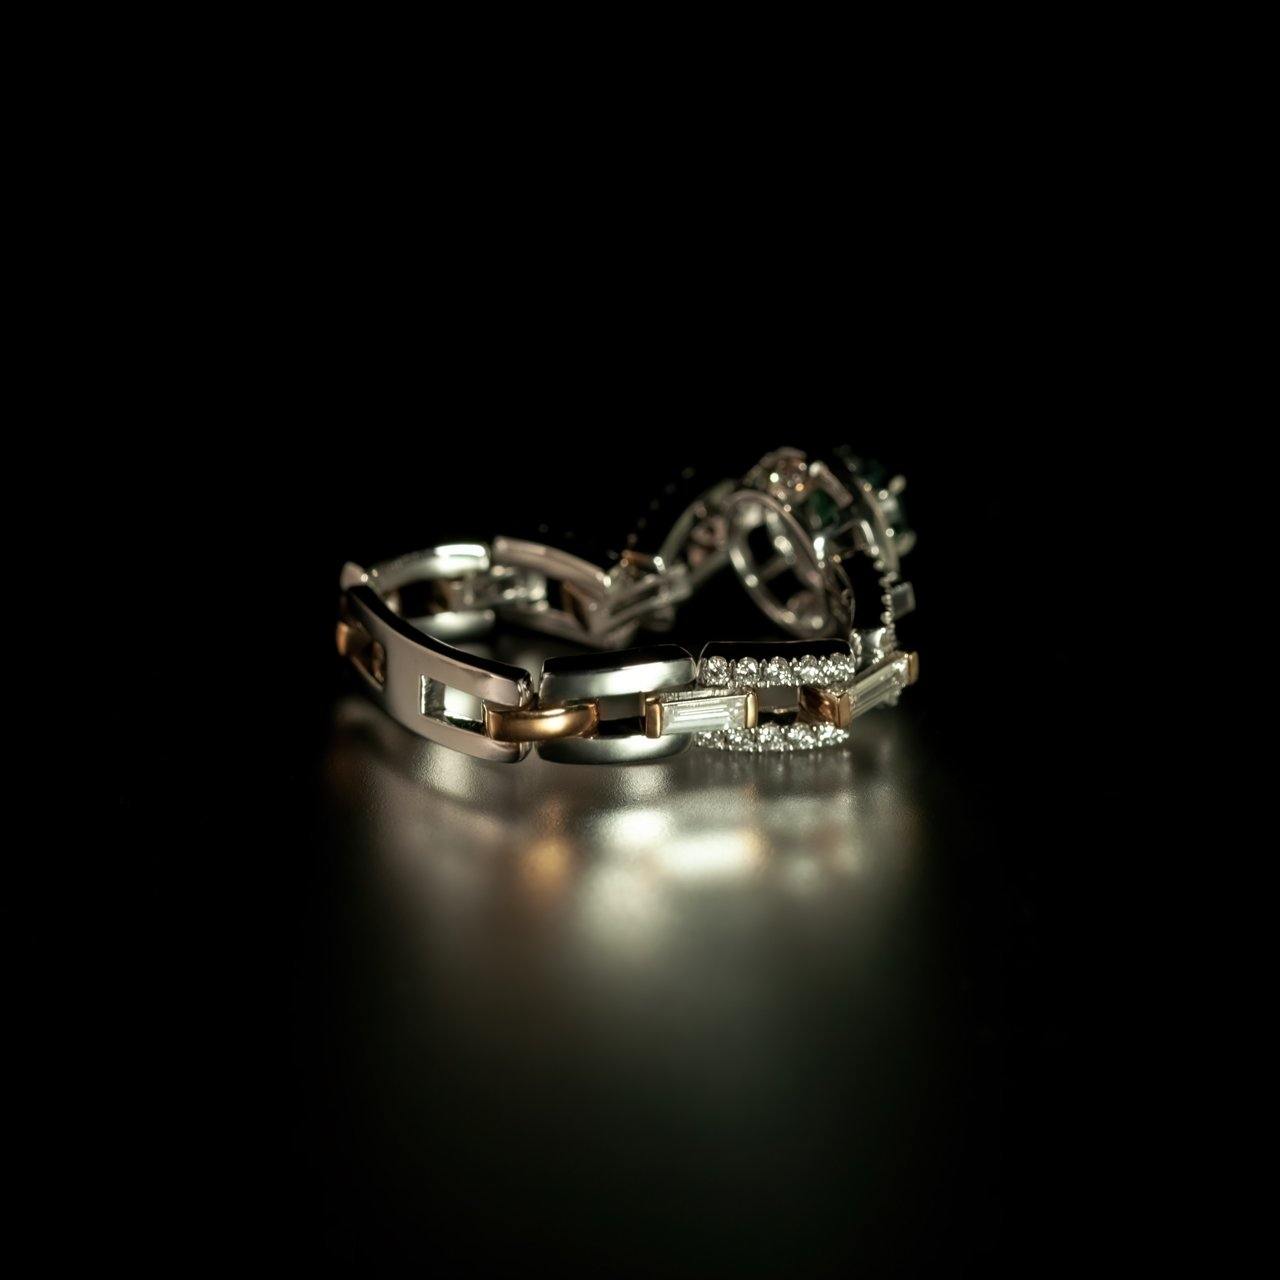 Với sự kết hợp của sự độc đáo và sắc màu đẹp tự nhiên của nhẫn alexandrite thiên nhiên, chiếc nhẫn này sẽ là điểm nhấn hoàn hảo cho bất kỳ bộ trang phục nào. Một vật phẩm đầy phong cách và giá trị kiến ​​thức cho những ai yêu trang sức và đá quý.